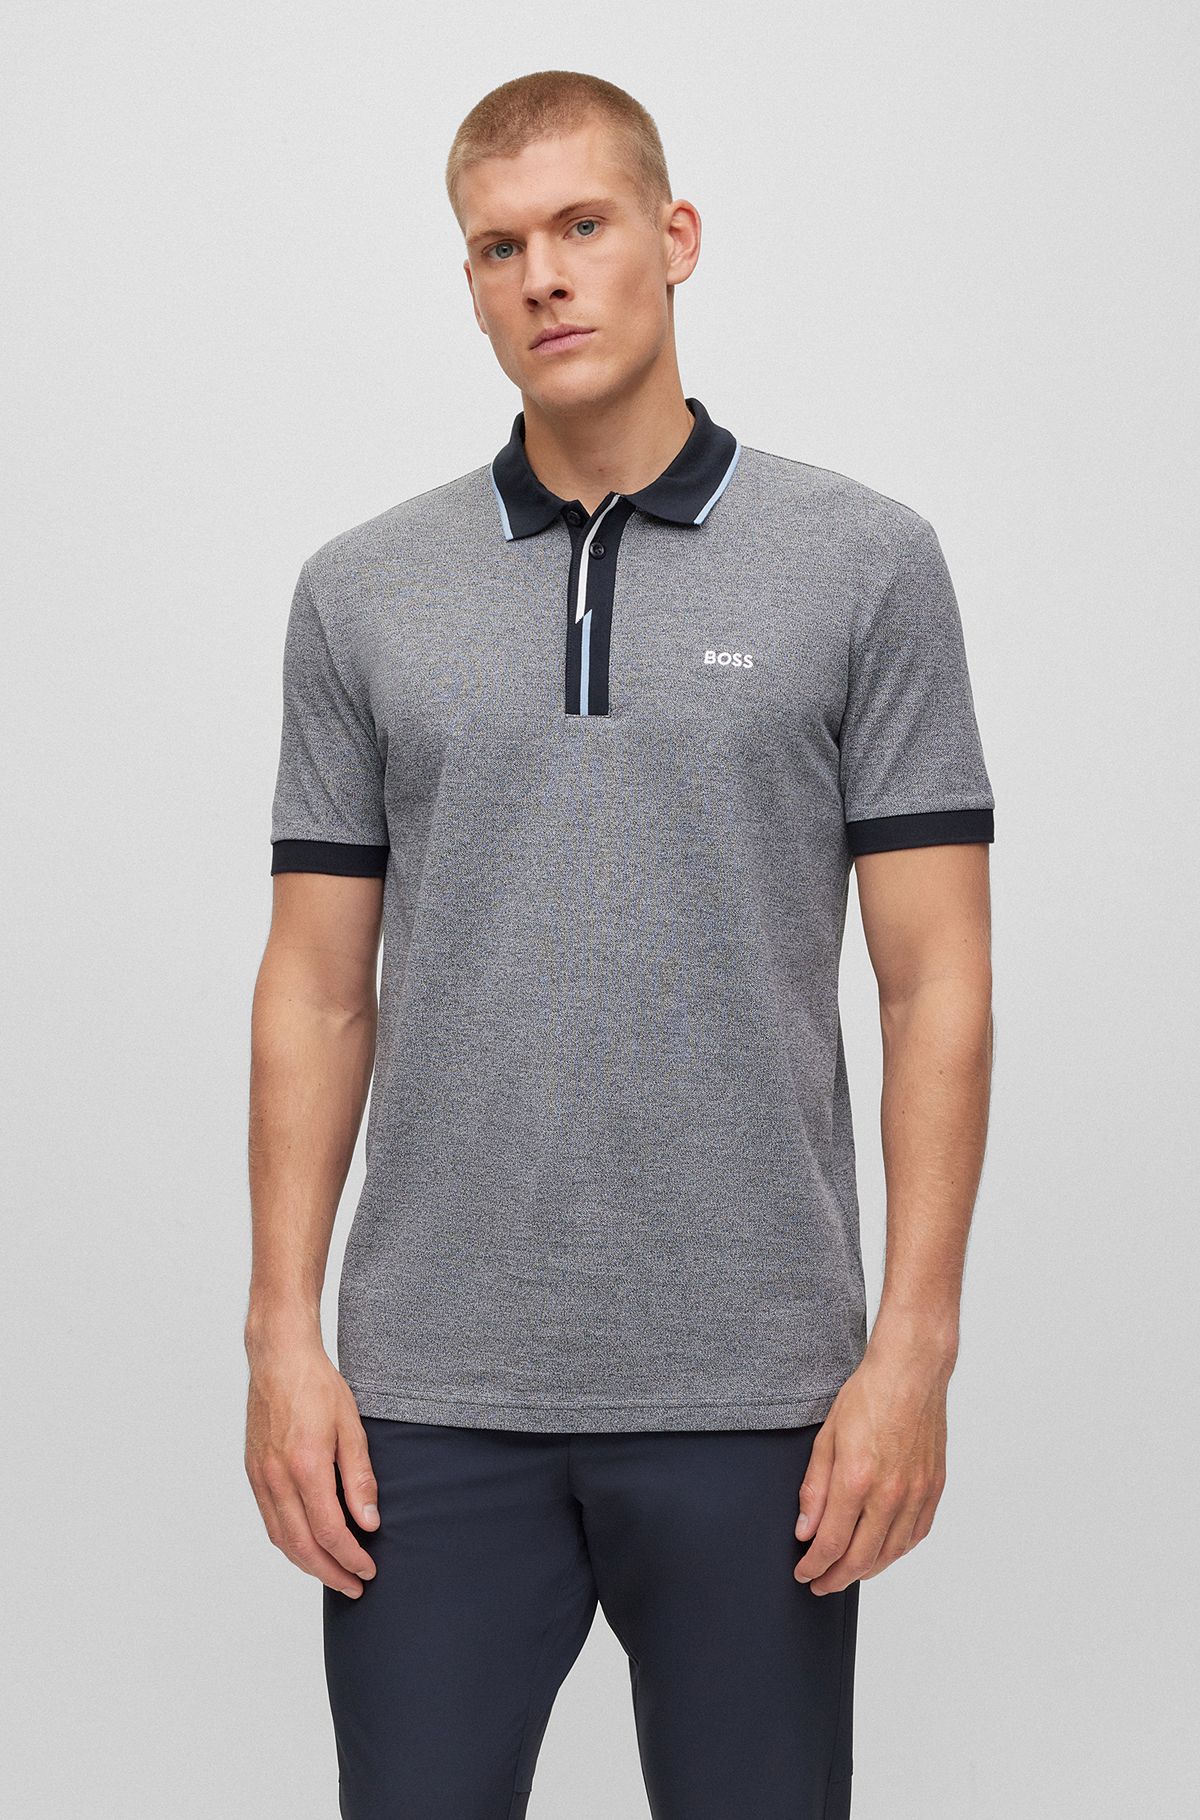 Cotton-piqué polo shirt with embroidered logo, Dark Blue